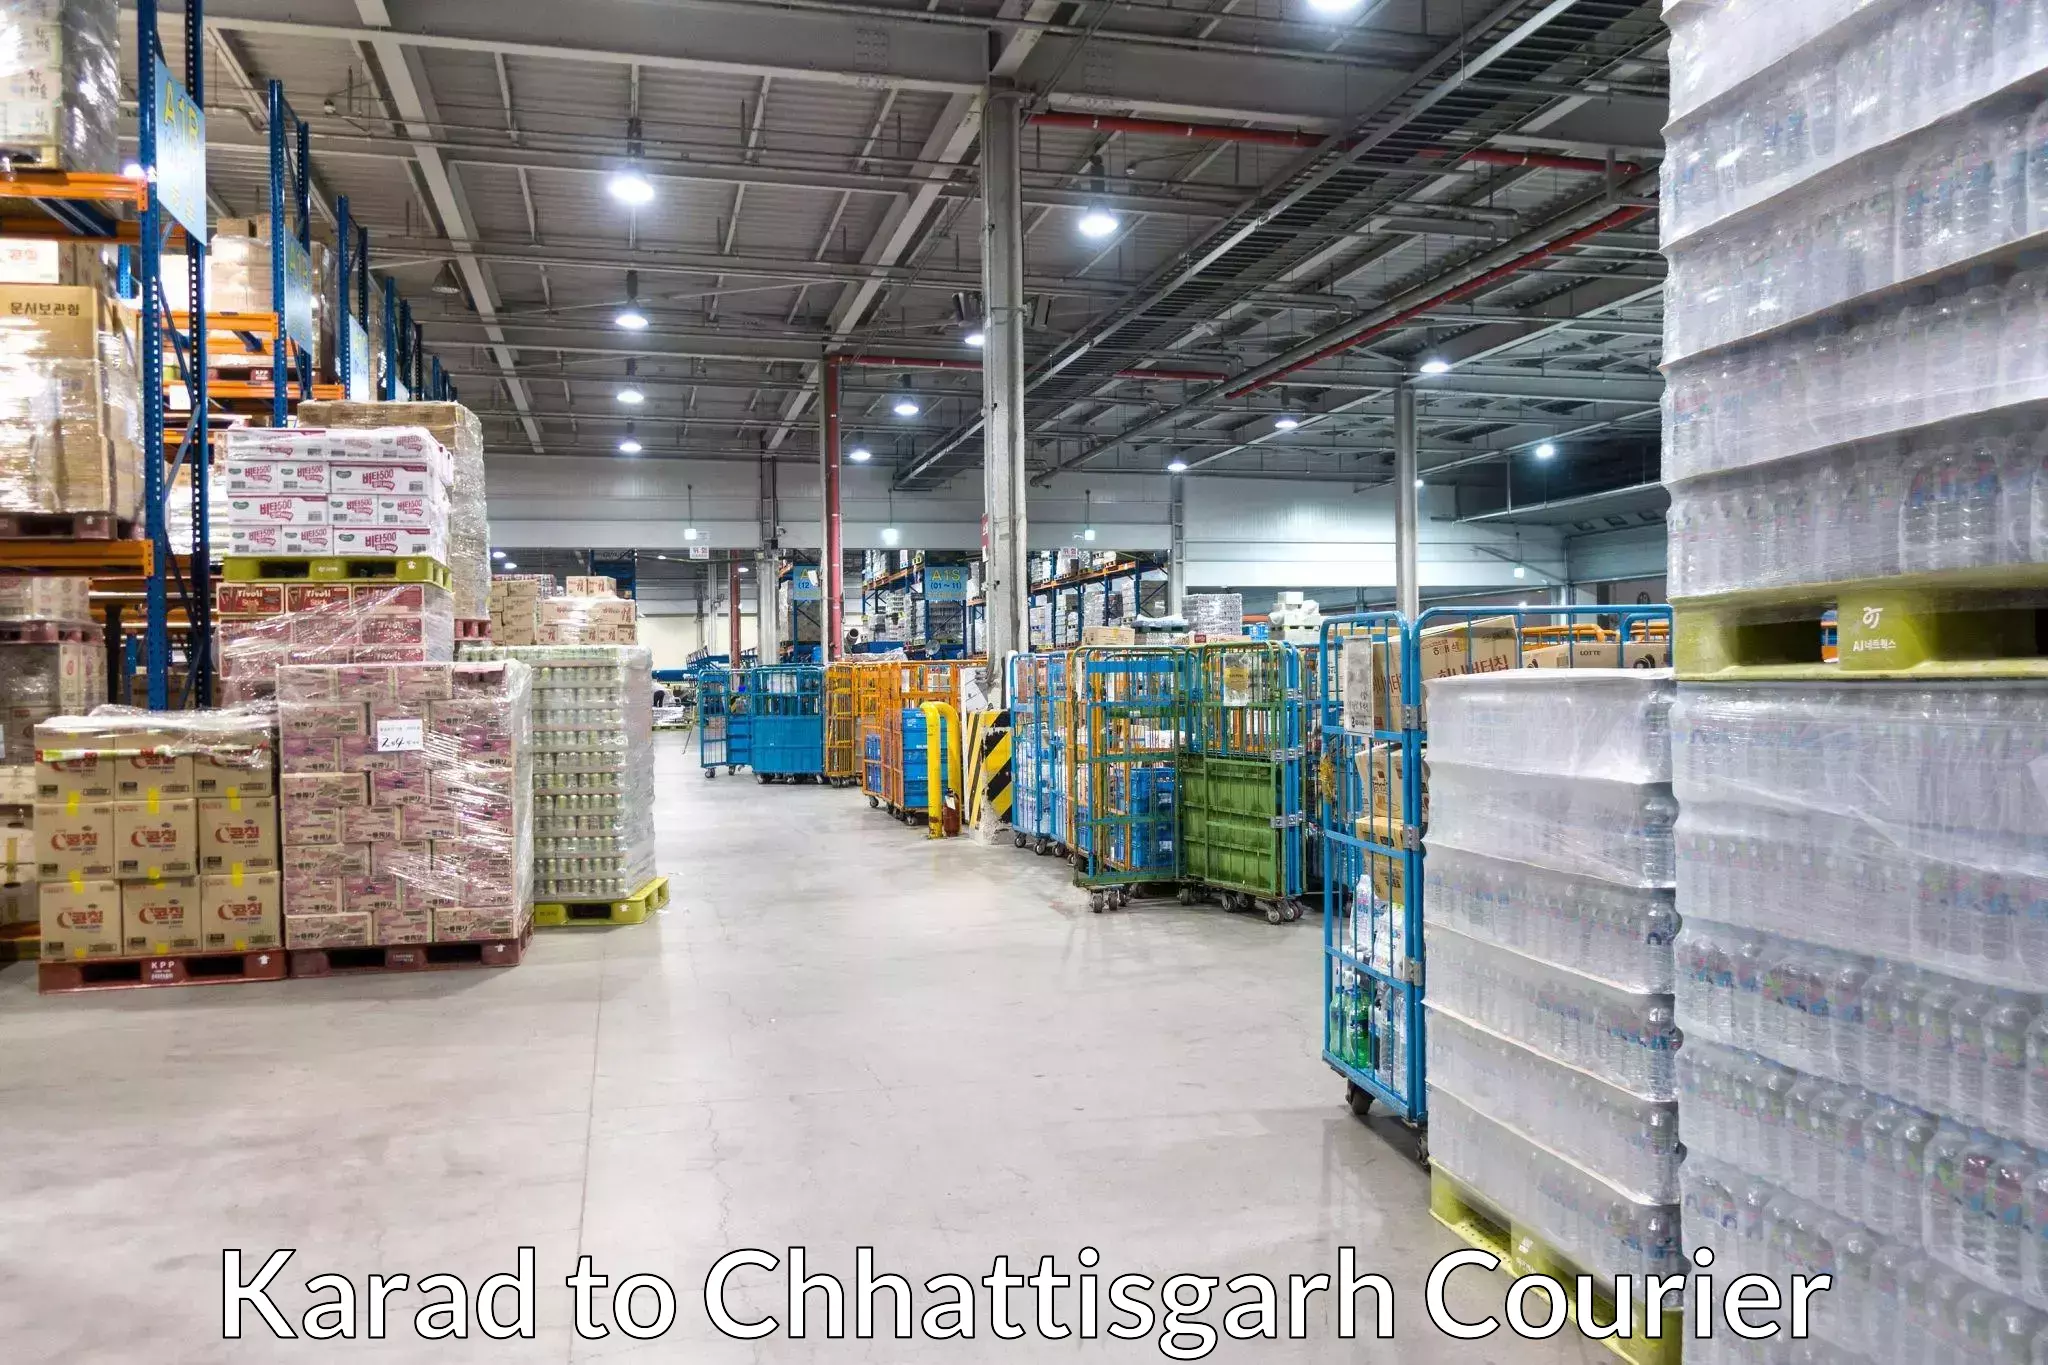 E-commerce logistics support Karad to Patna Chhattisgarh